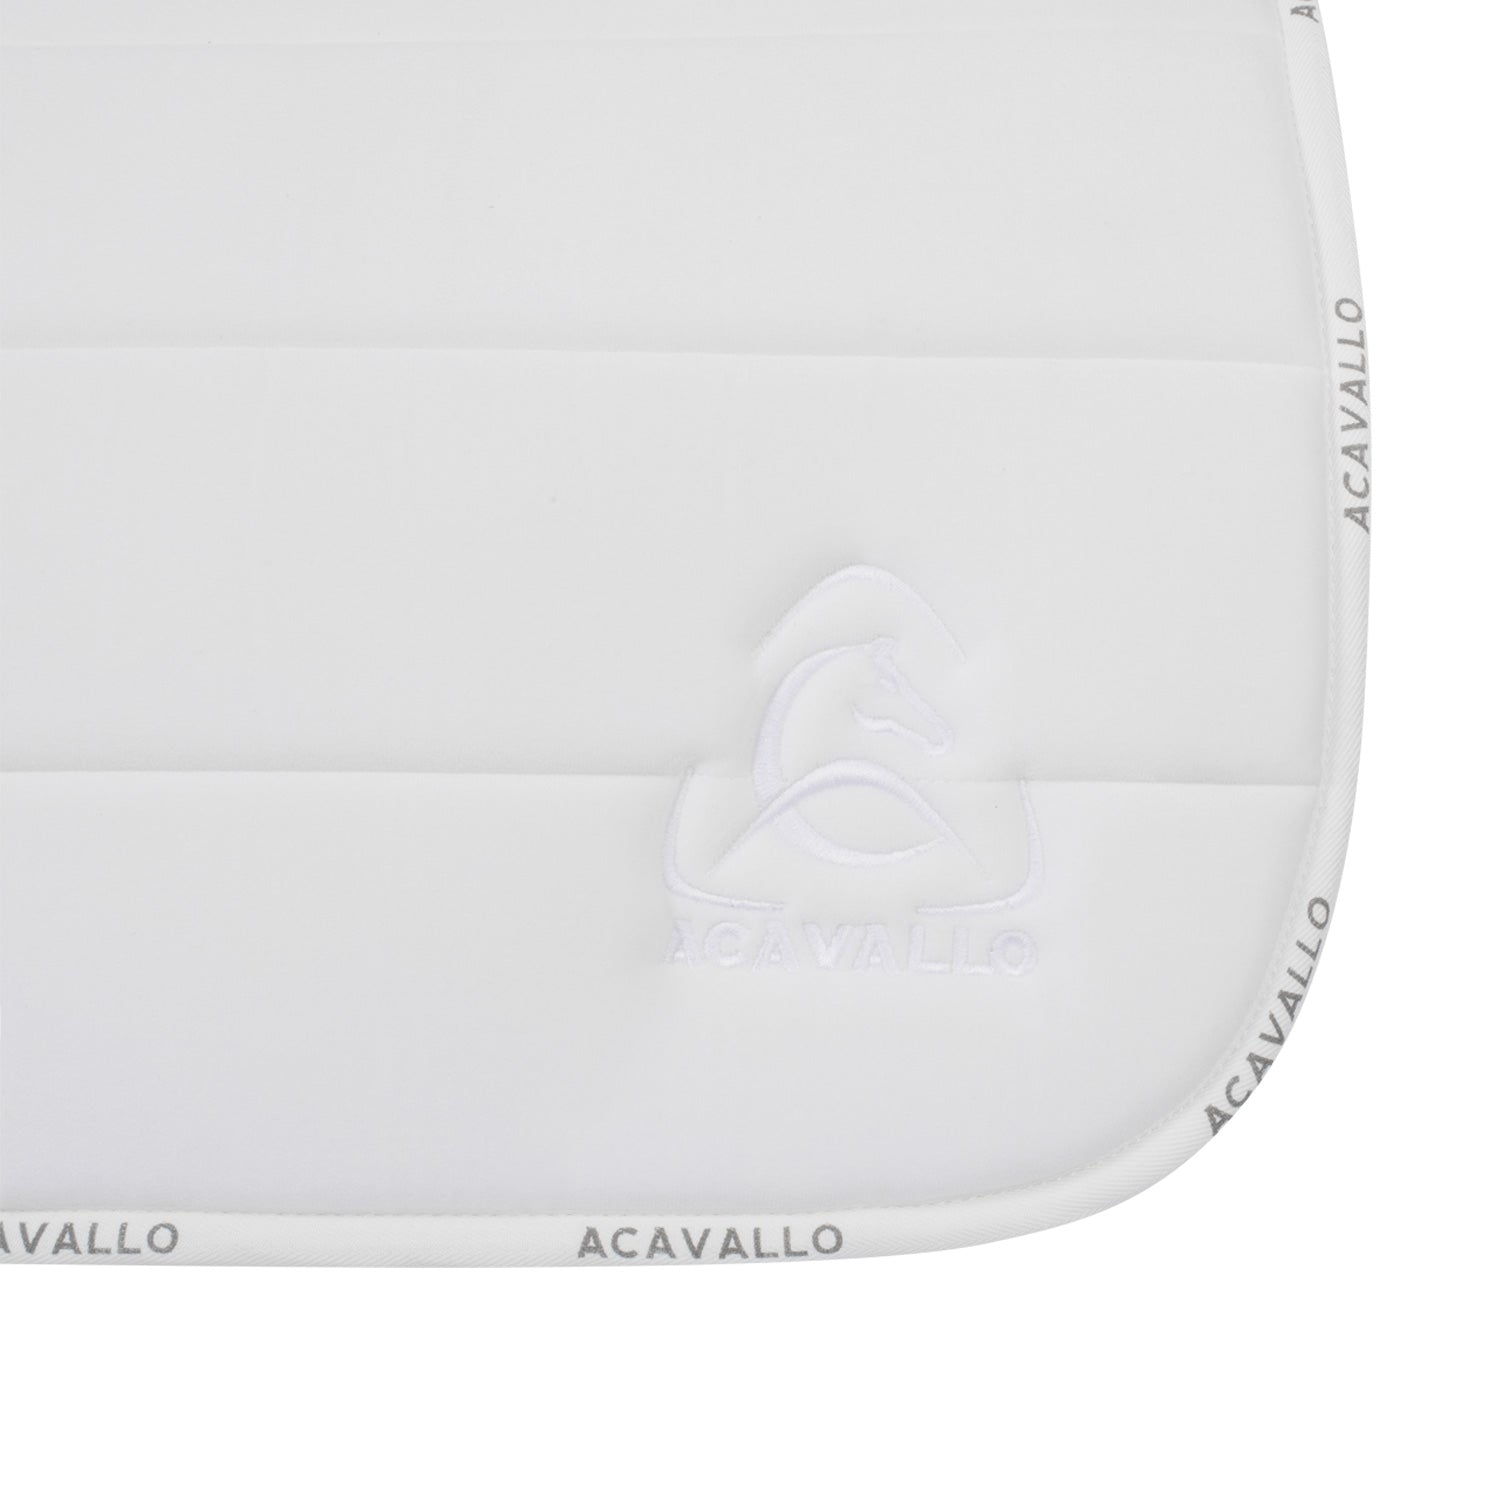 White Acavallo saddle blanket